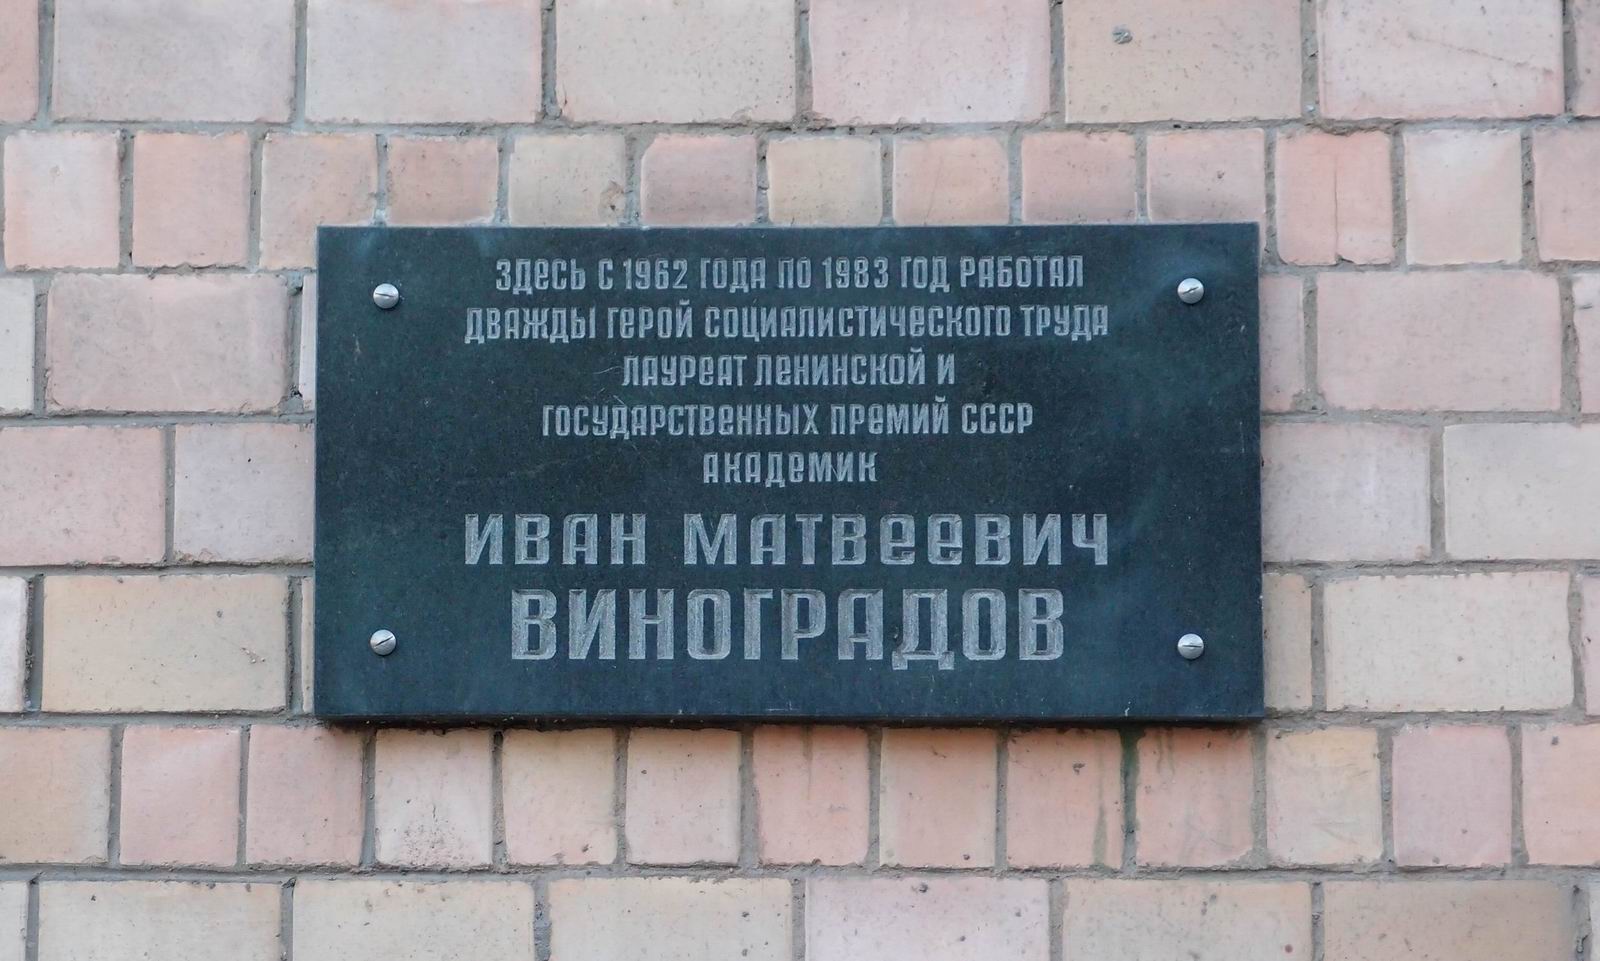 Мемориальная доска Виноградову И.М. (1891-1983), арх. А.С.Михейкин, на улице Вавилова, дом 42, открыта 27.4.1984.